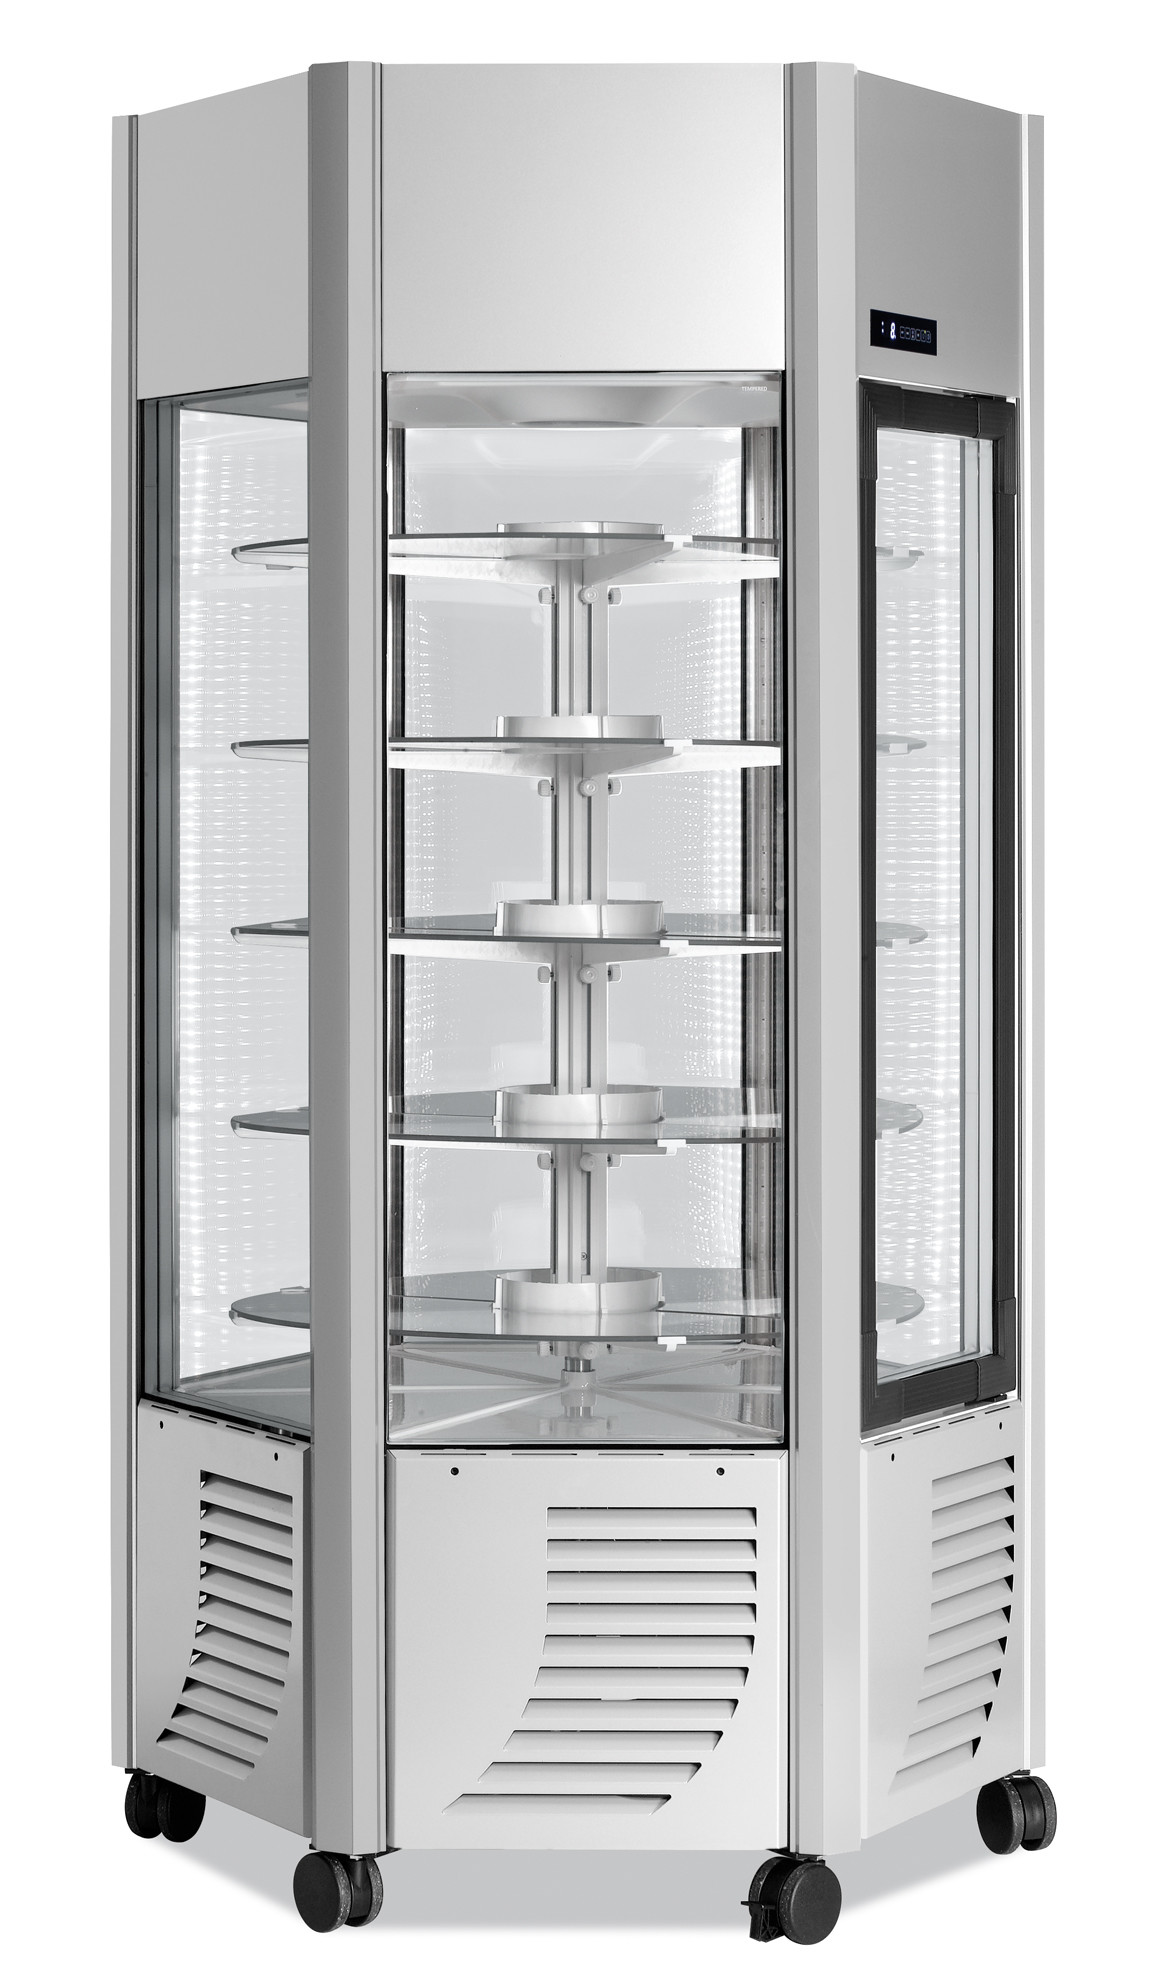 Морозильный шкаф Scaiola Odissea ERGE BT Premium в аренду, низкотемпературный, витринный